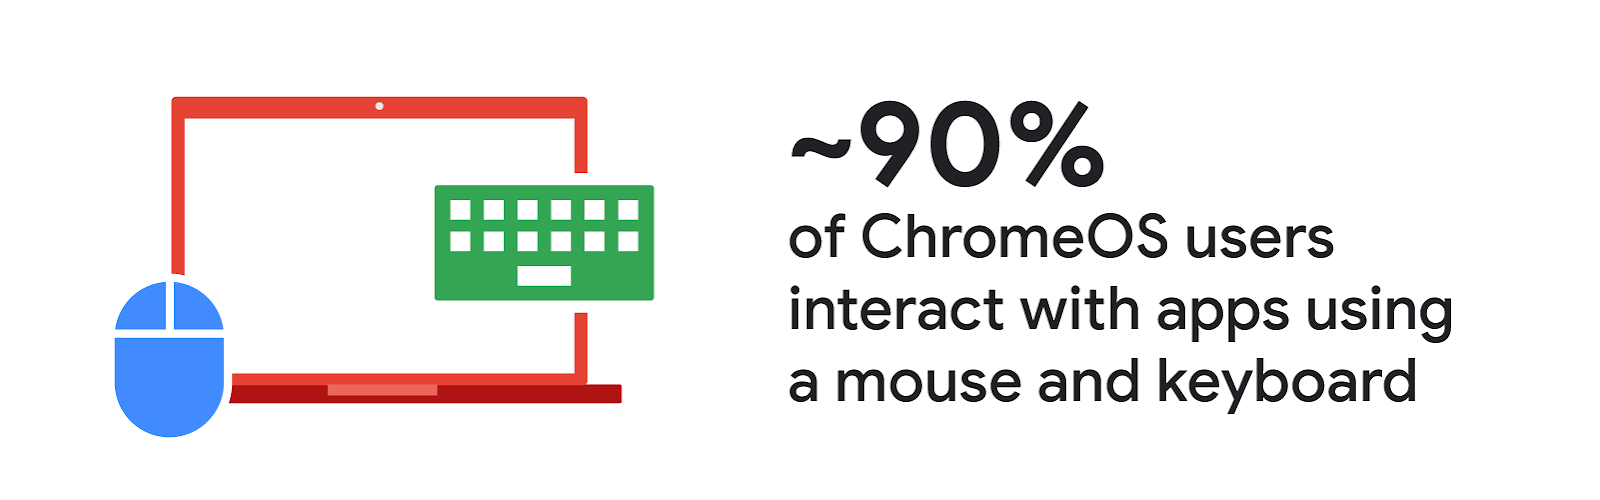 حدود 90٪ از کاربران ChromeOS با استفاده از ماوس و صفحه کلید با برنامه ها تعامل دارند